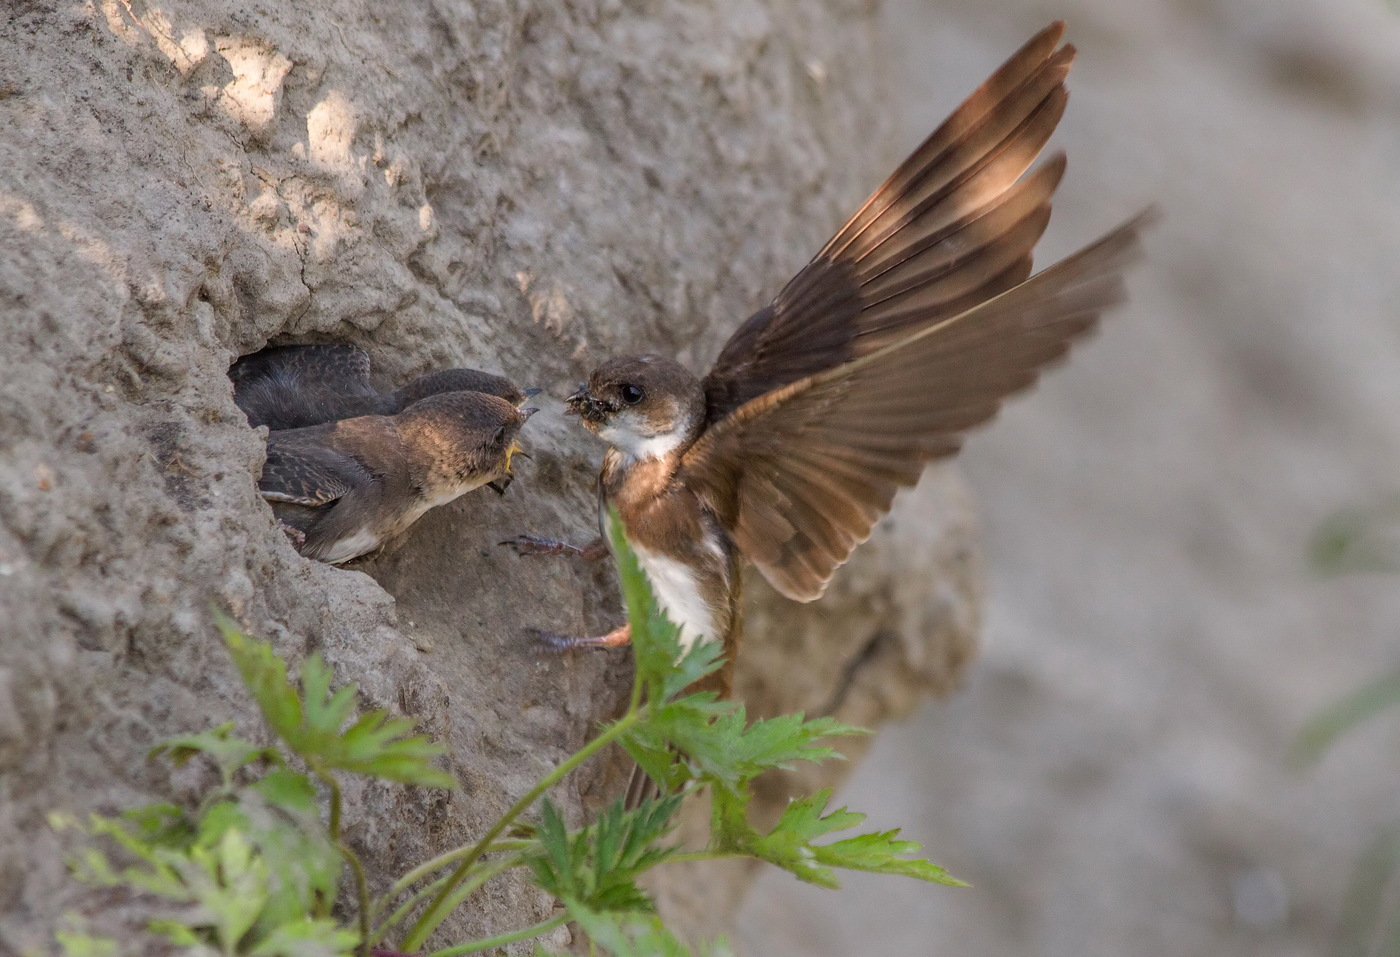 Hirondelle nourrit les poussins au nid